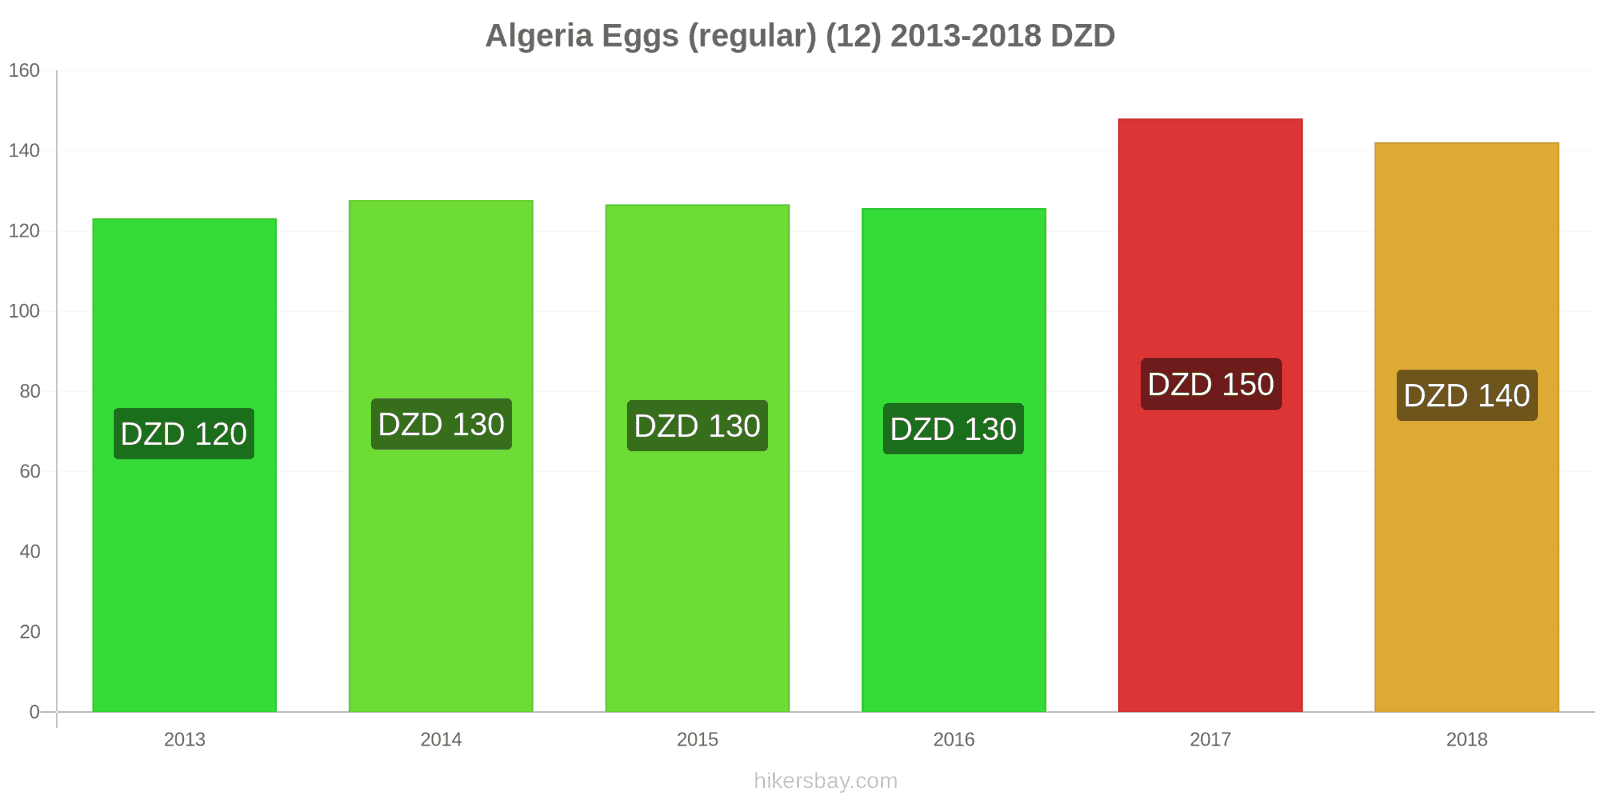 Algeria price changes Eggs (regular) (12) hikersbay.com